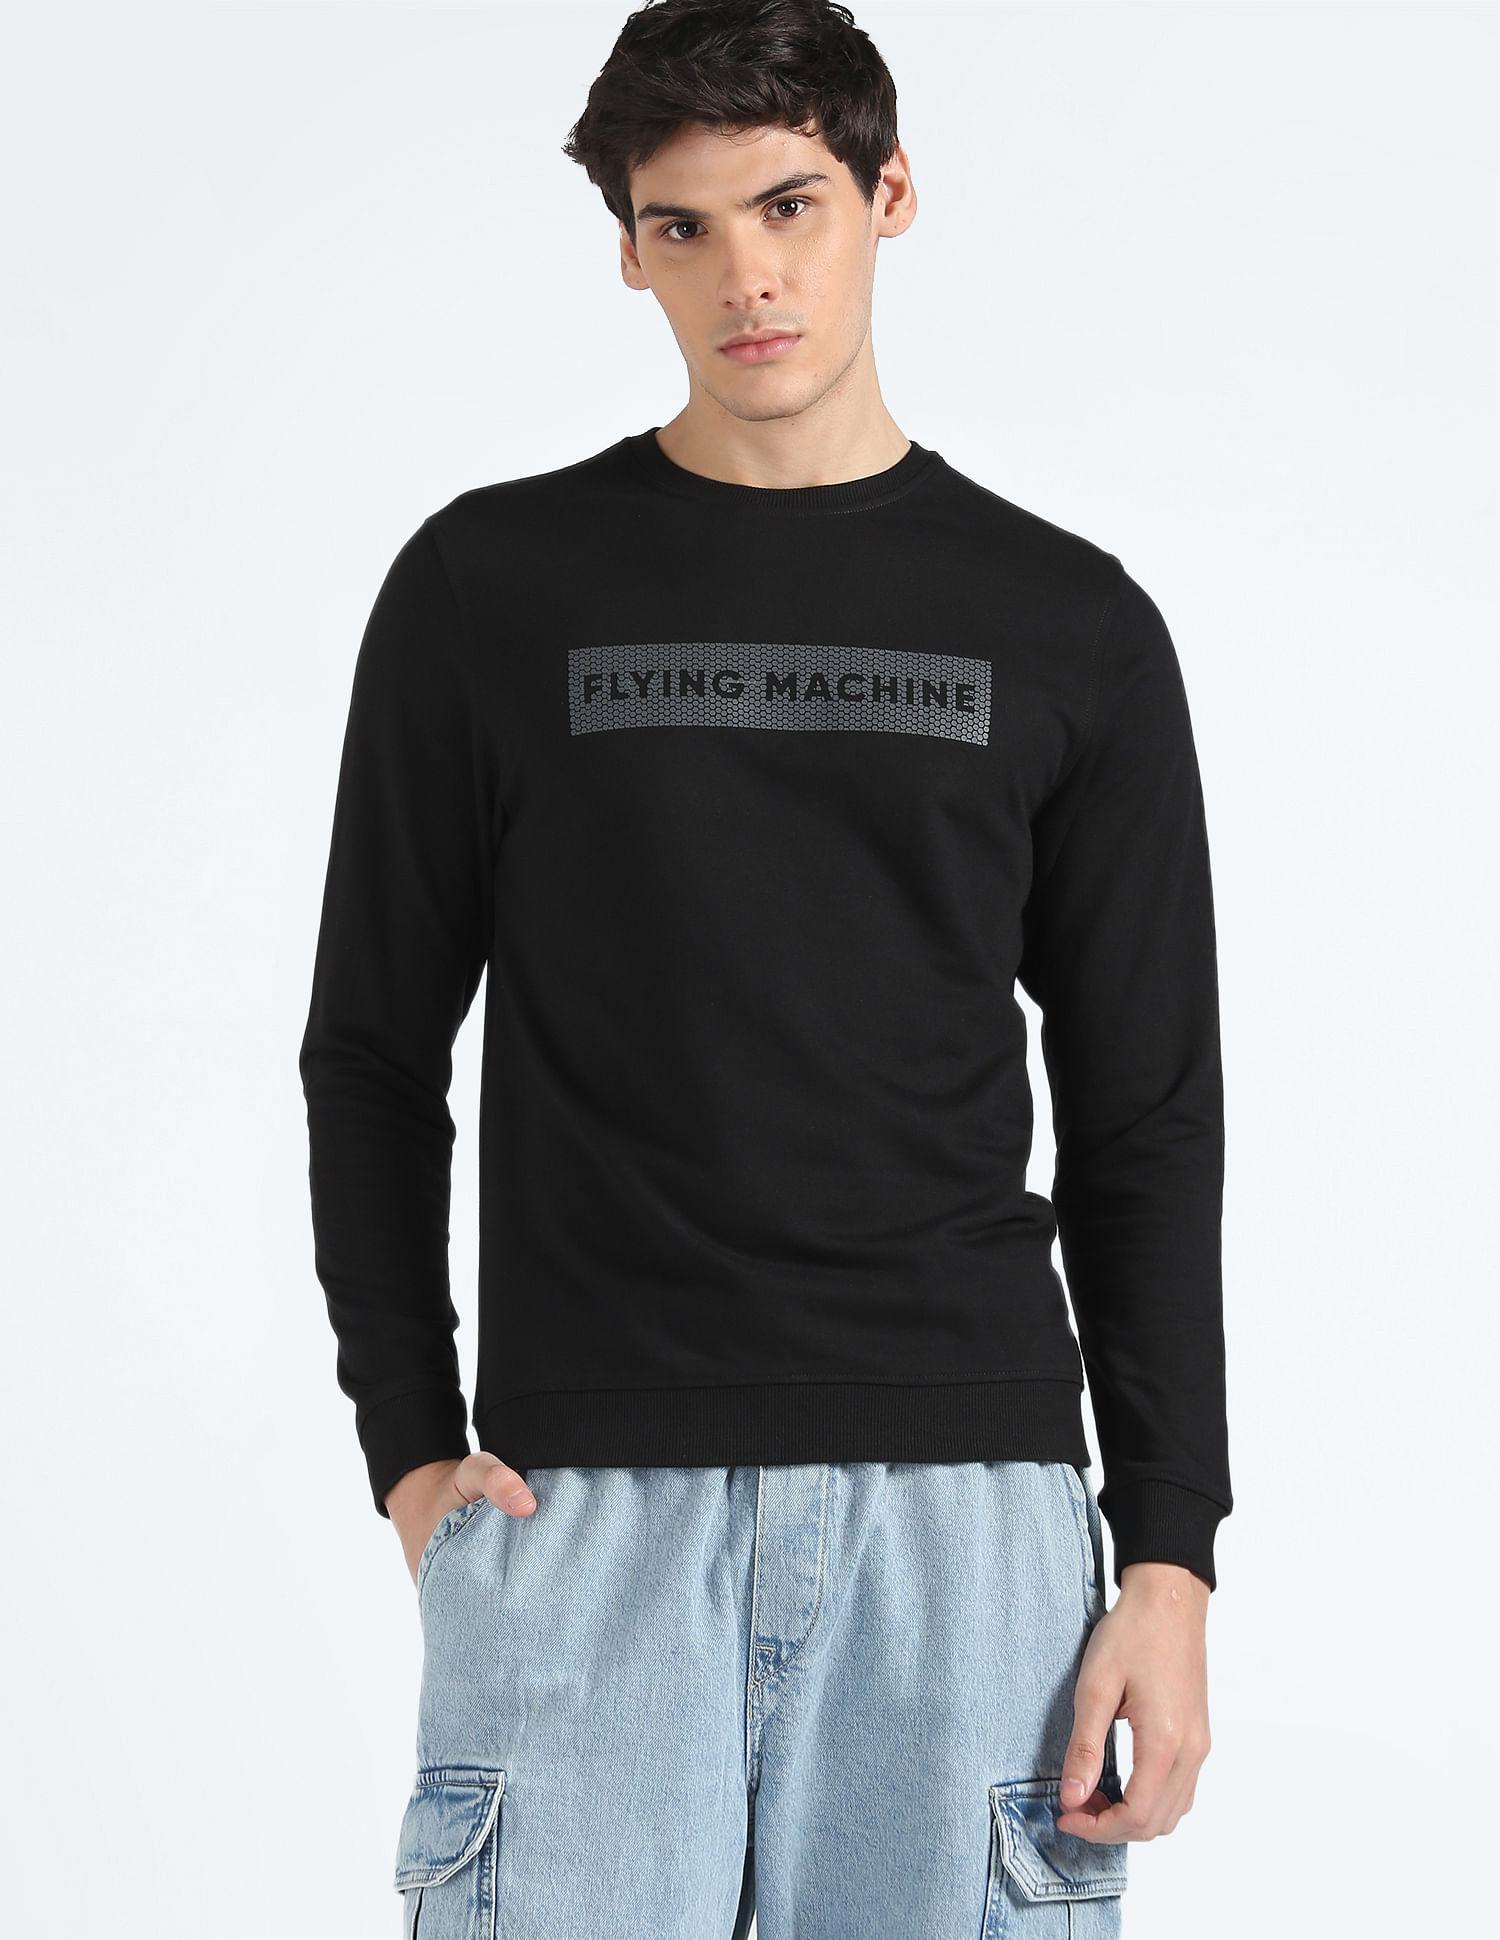 crew-neck-typographic-print-sweatshirt